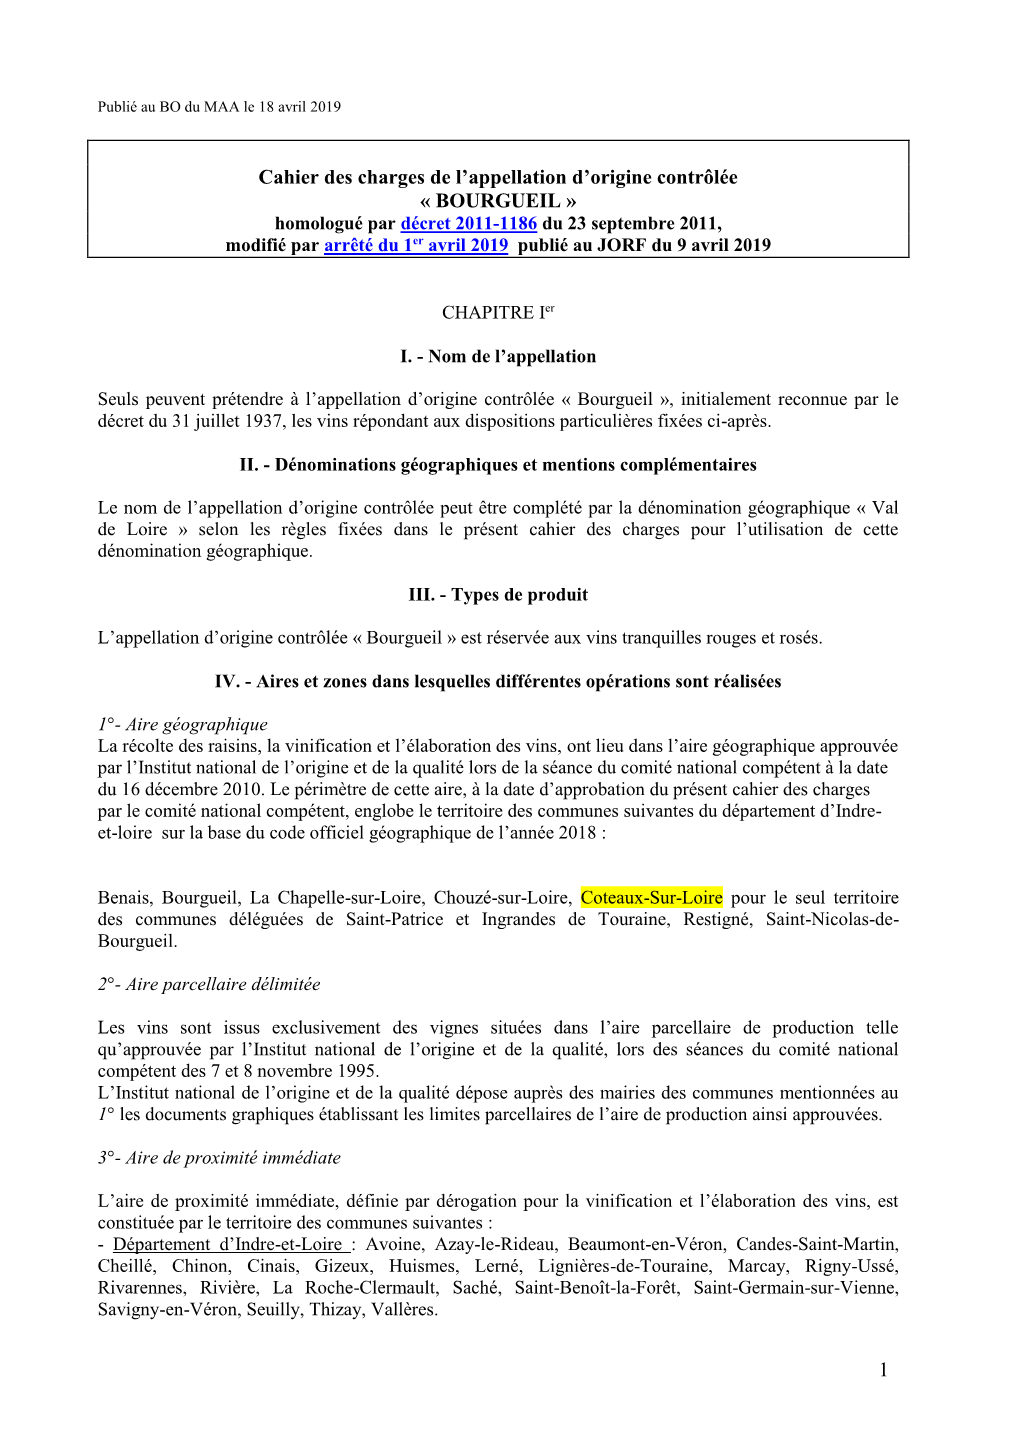 Cahier Des Charges De L'appellation D'origine Contrôlée Bourgueil